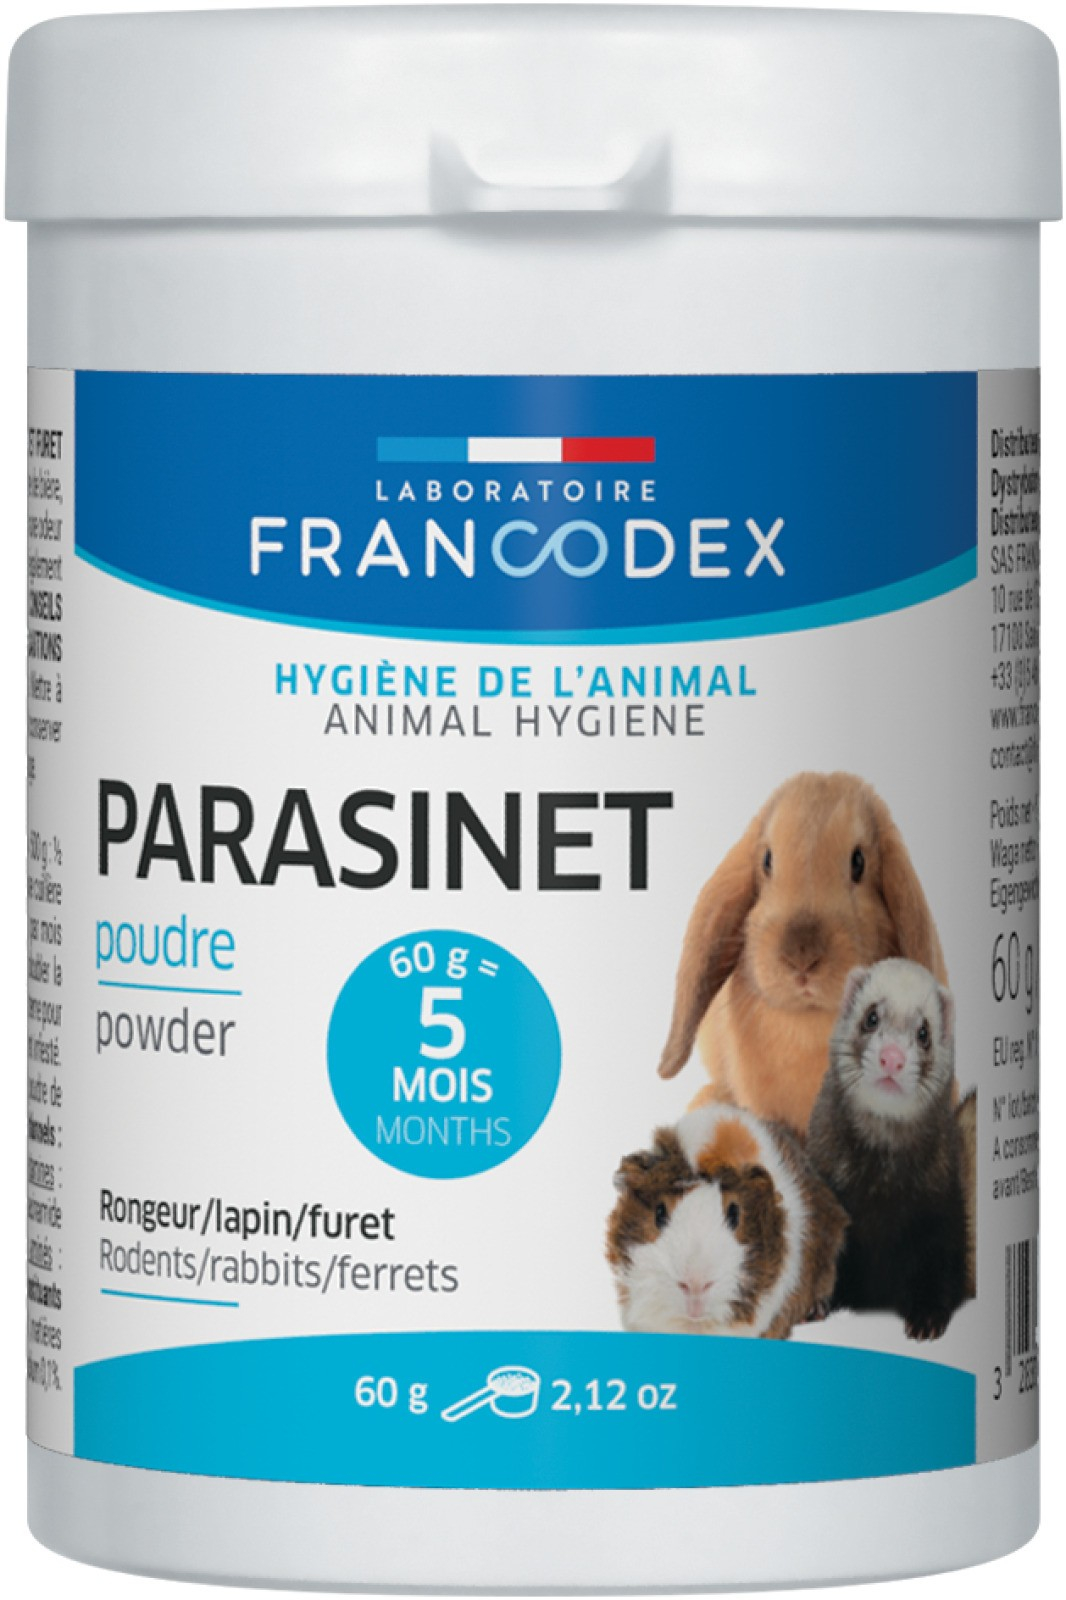 Francodex PARASINET Complemento alimenticio para conejos y roedores - 60g